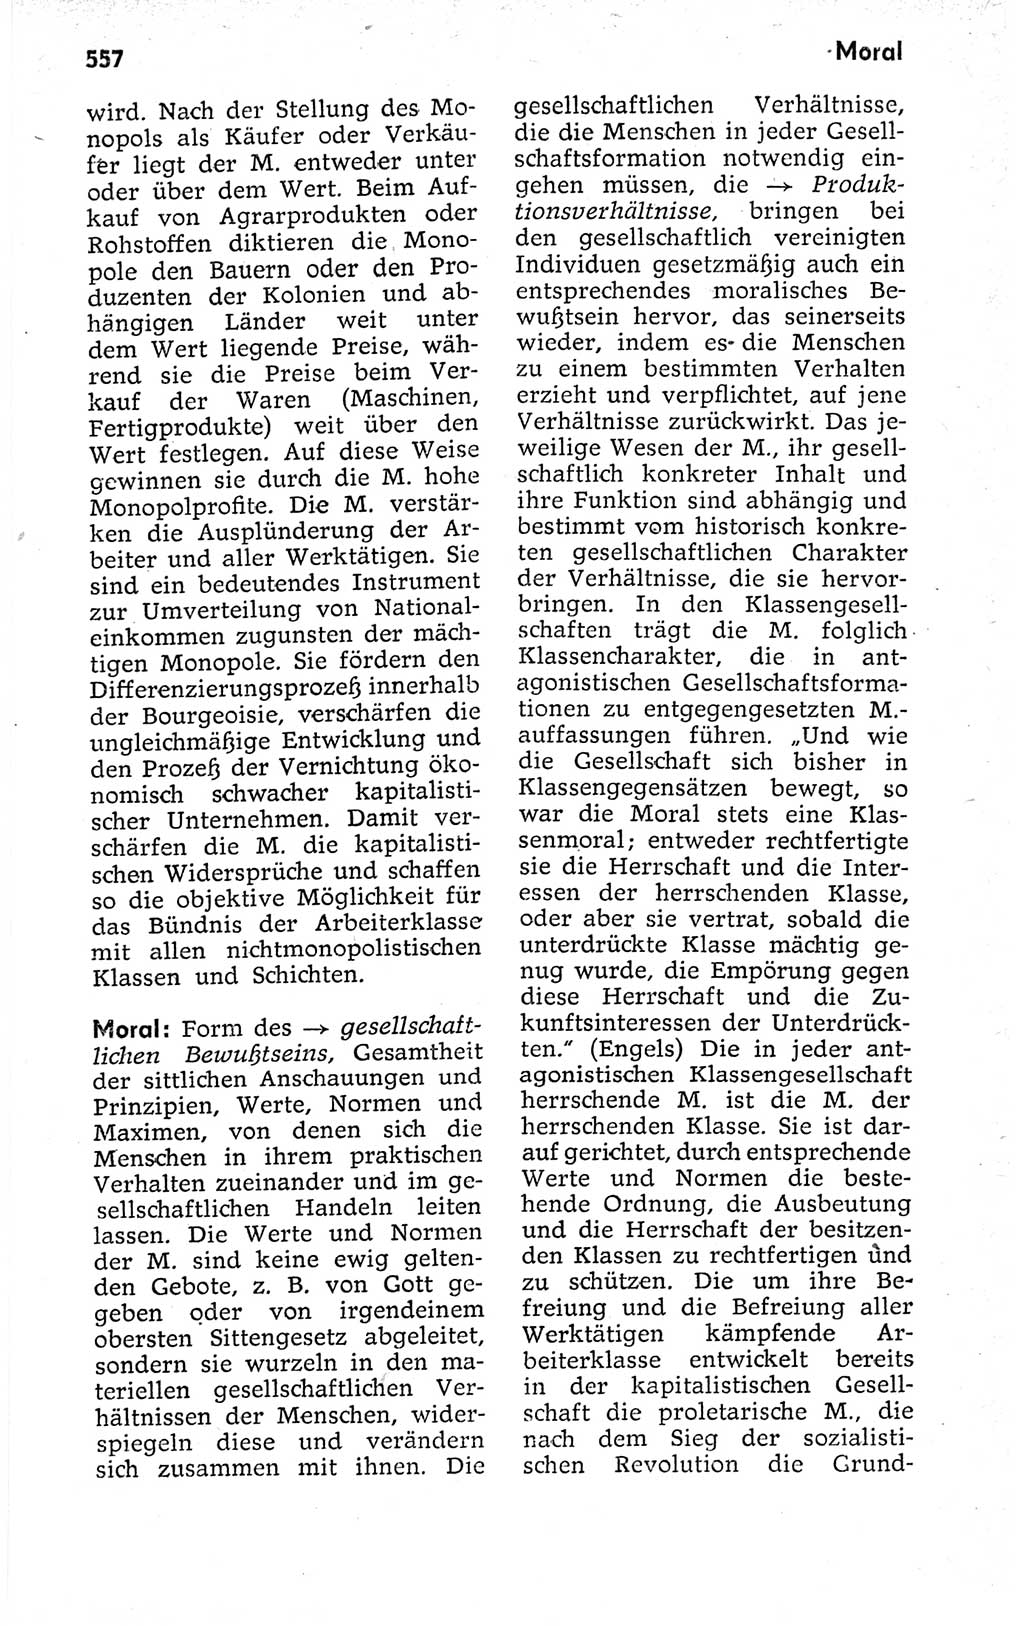 Kleines politisches Wörterbuch [Deutsche Demokratische Republik (DDR)] 1973, Seite 557 (Kl. pol. Wb. DDR 1973, S. 557)